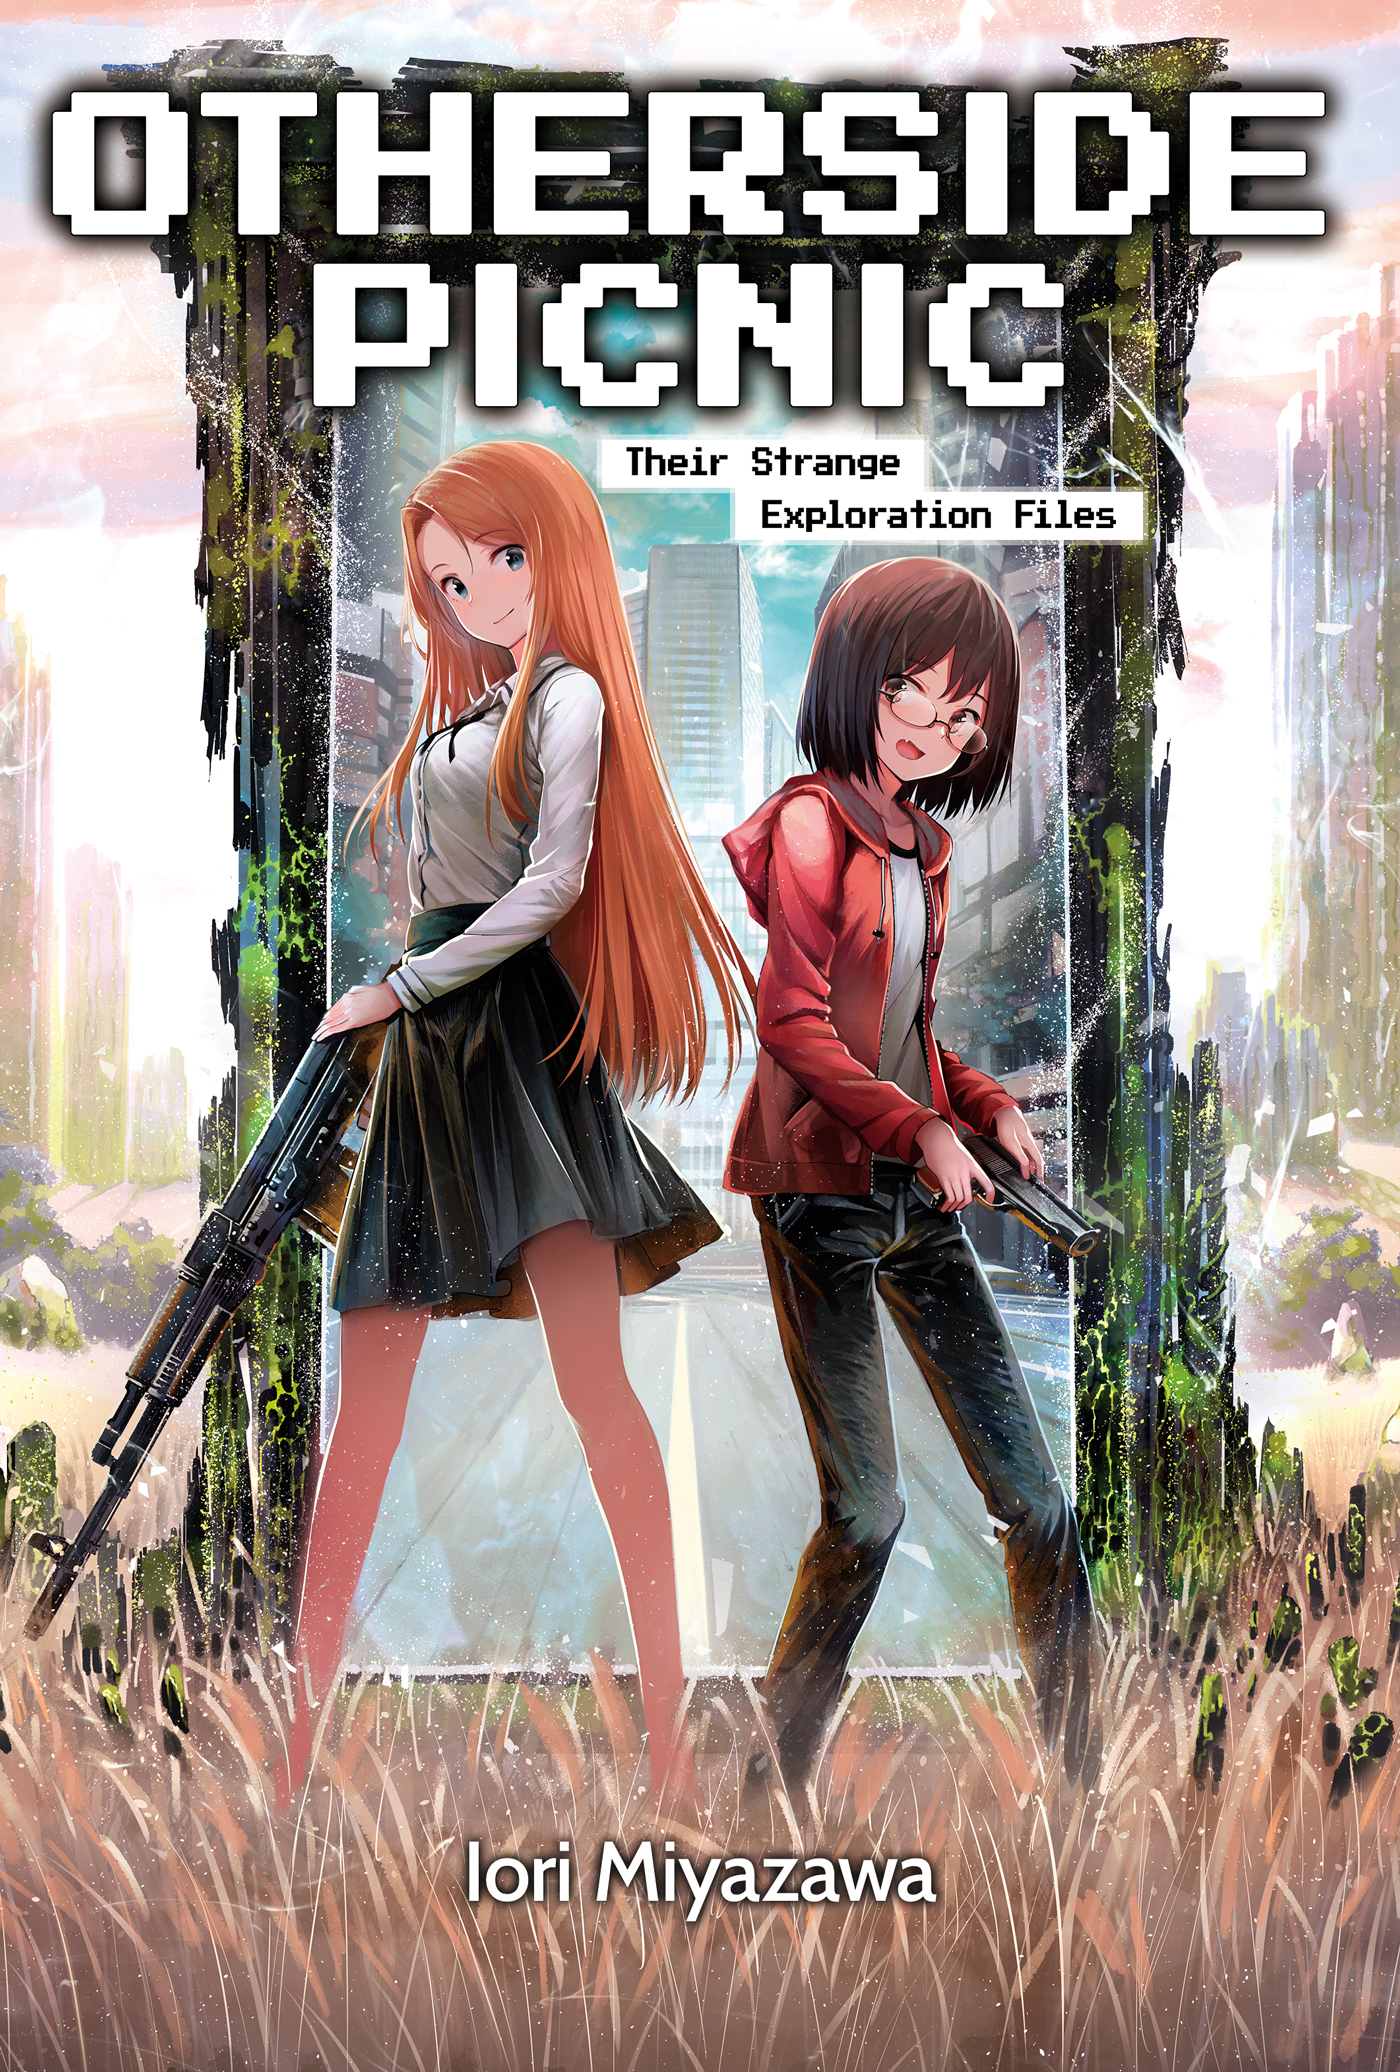 Otherside Picnic 08 (Manga) - Walt's Comic Shop €11.69